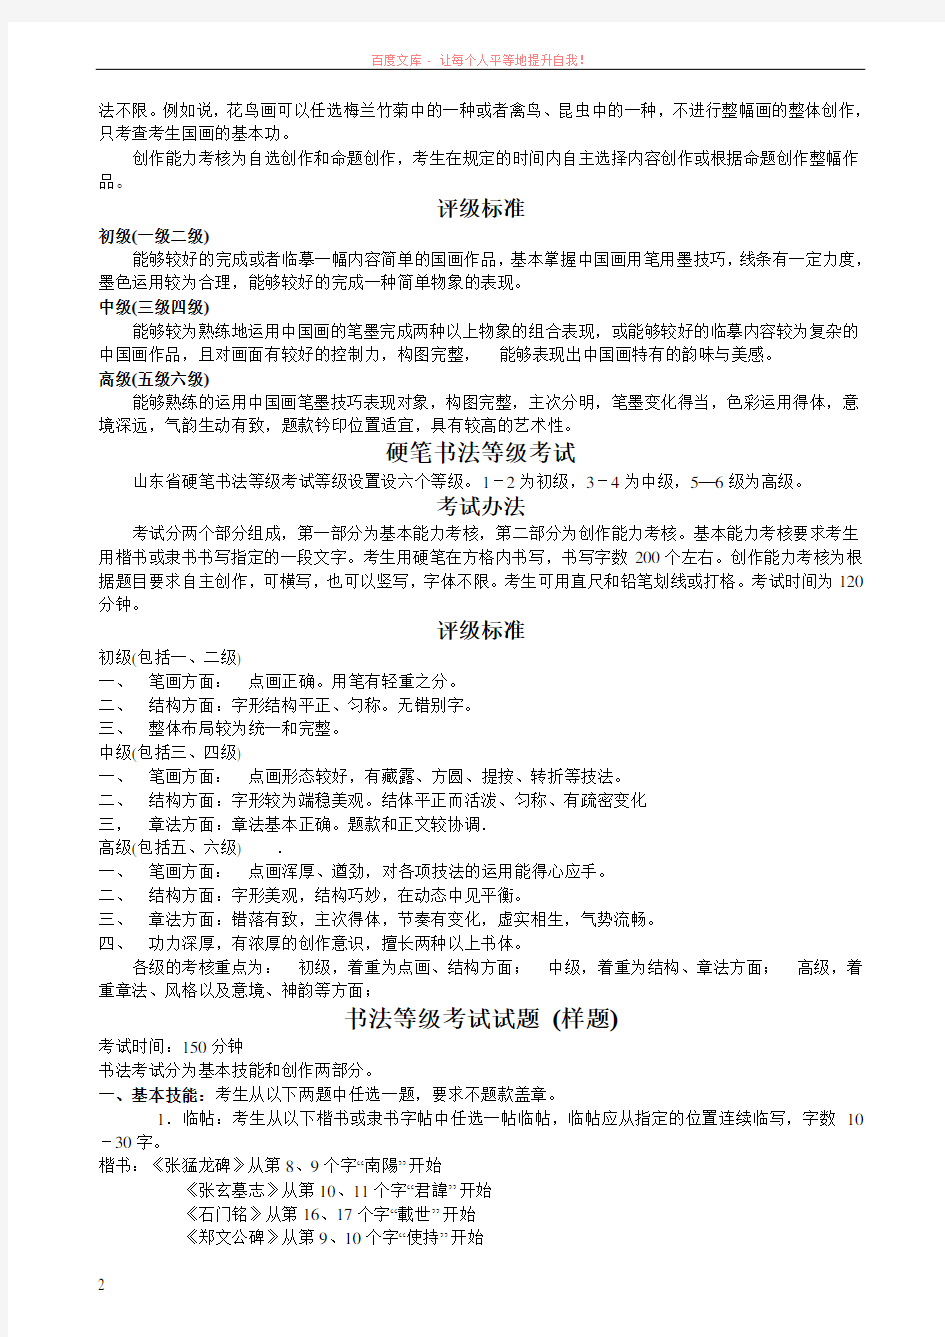 中国书画等级考试考试办法评级标准及考试样题 (1)